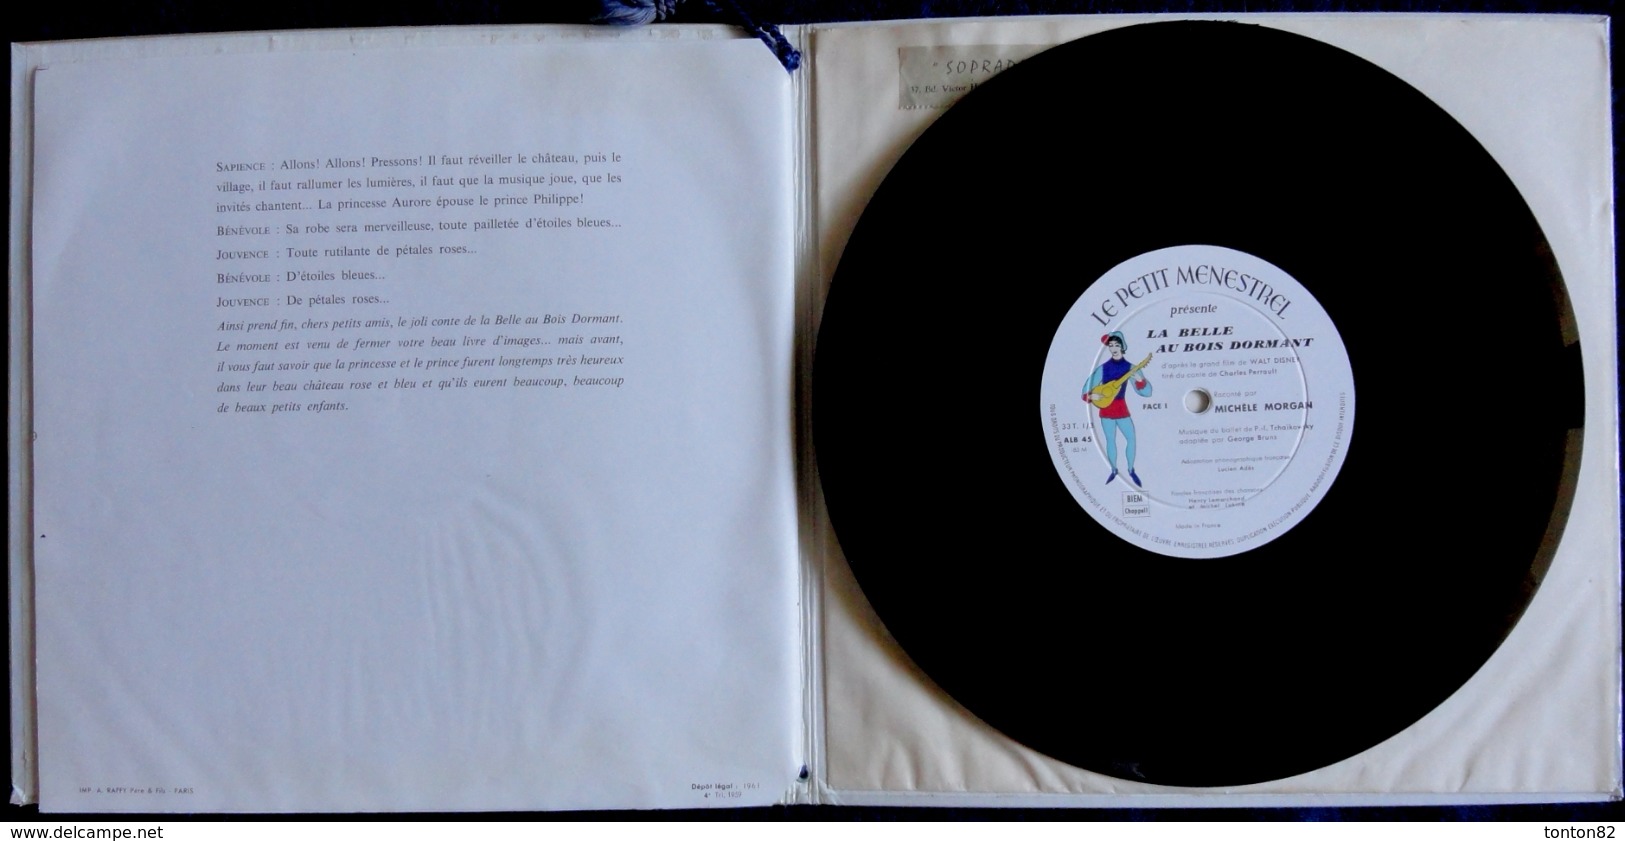 La Belle au Bois Dormant - Raconté par Michèle Morgan - Livre et Disque 33 T. - Un Album du Petit Ménestrel n°45 - 1959